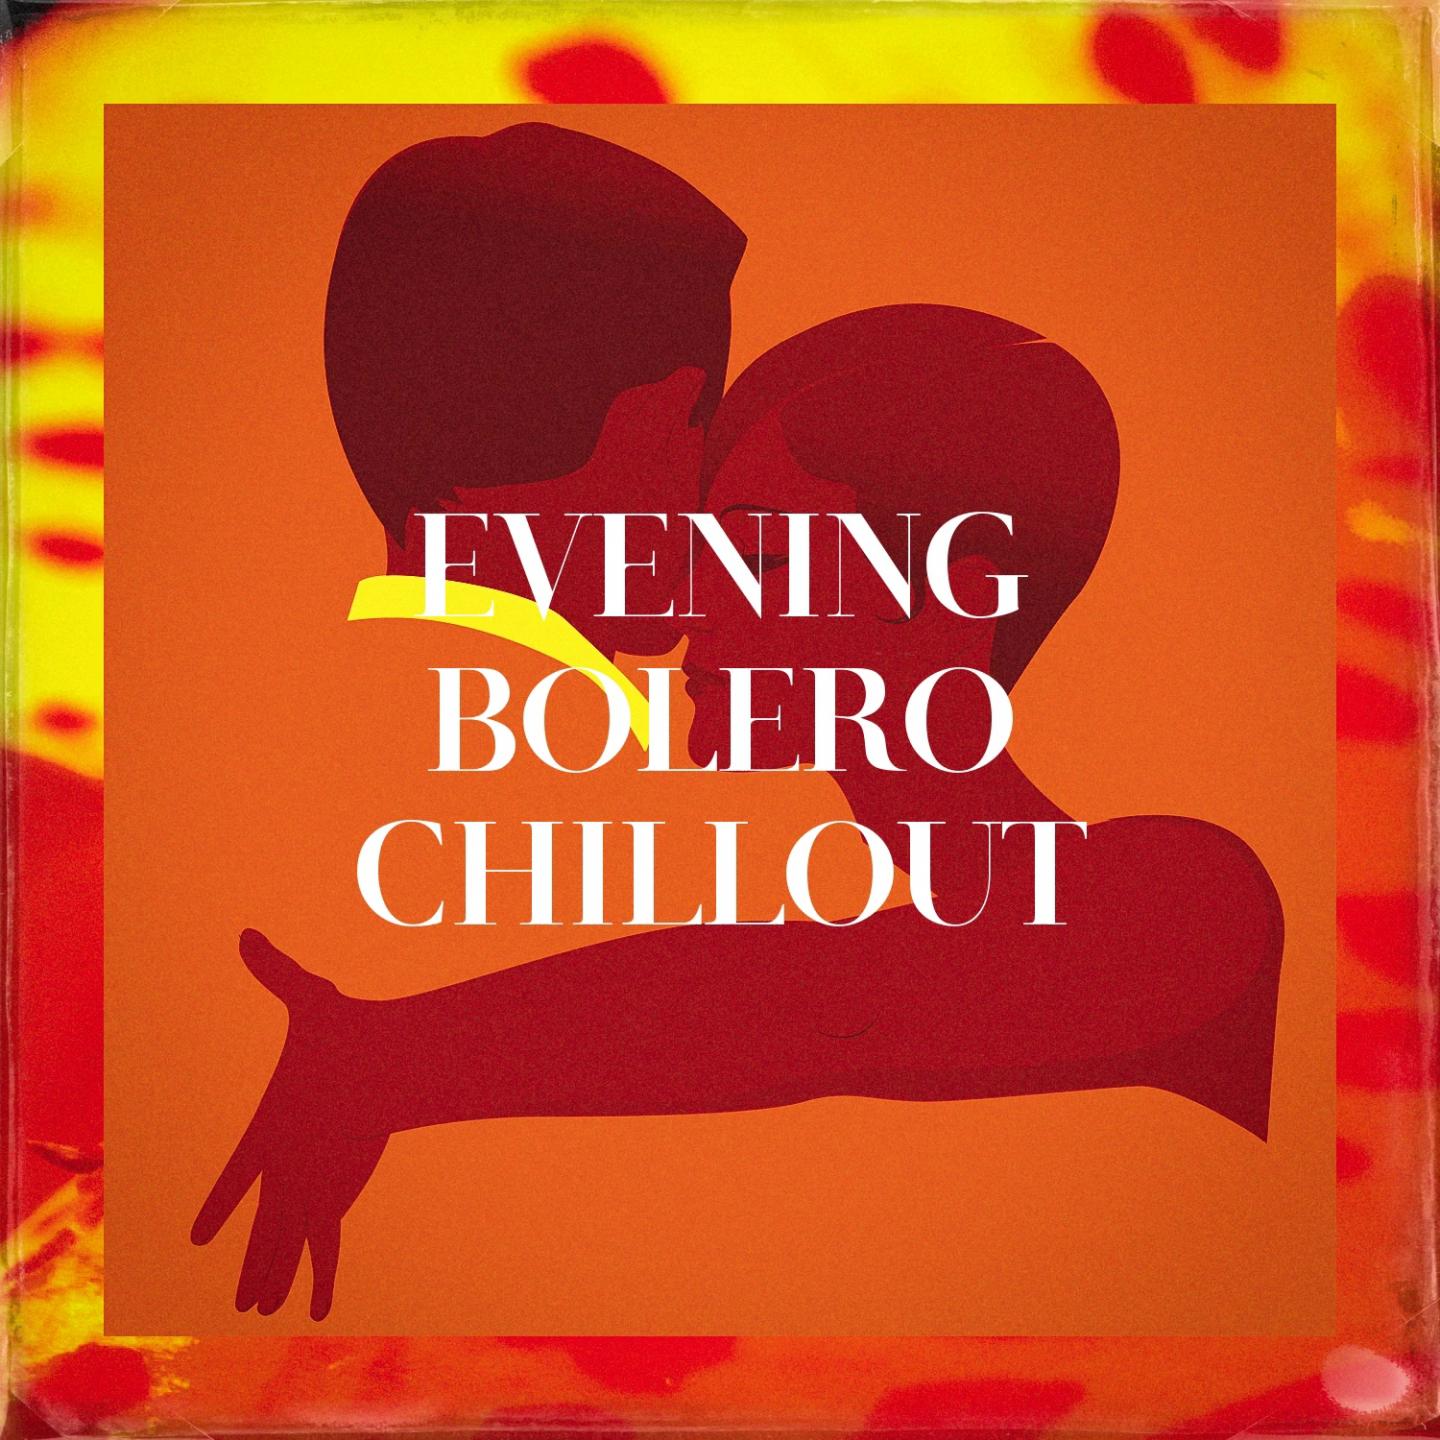 Evening Bolero Chillout